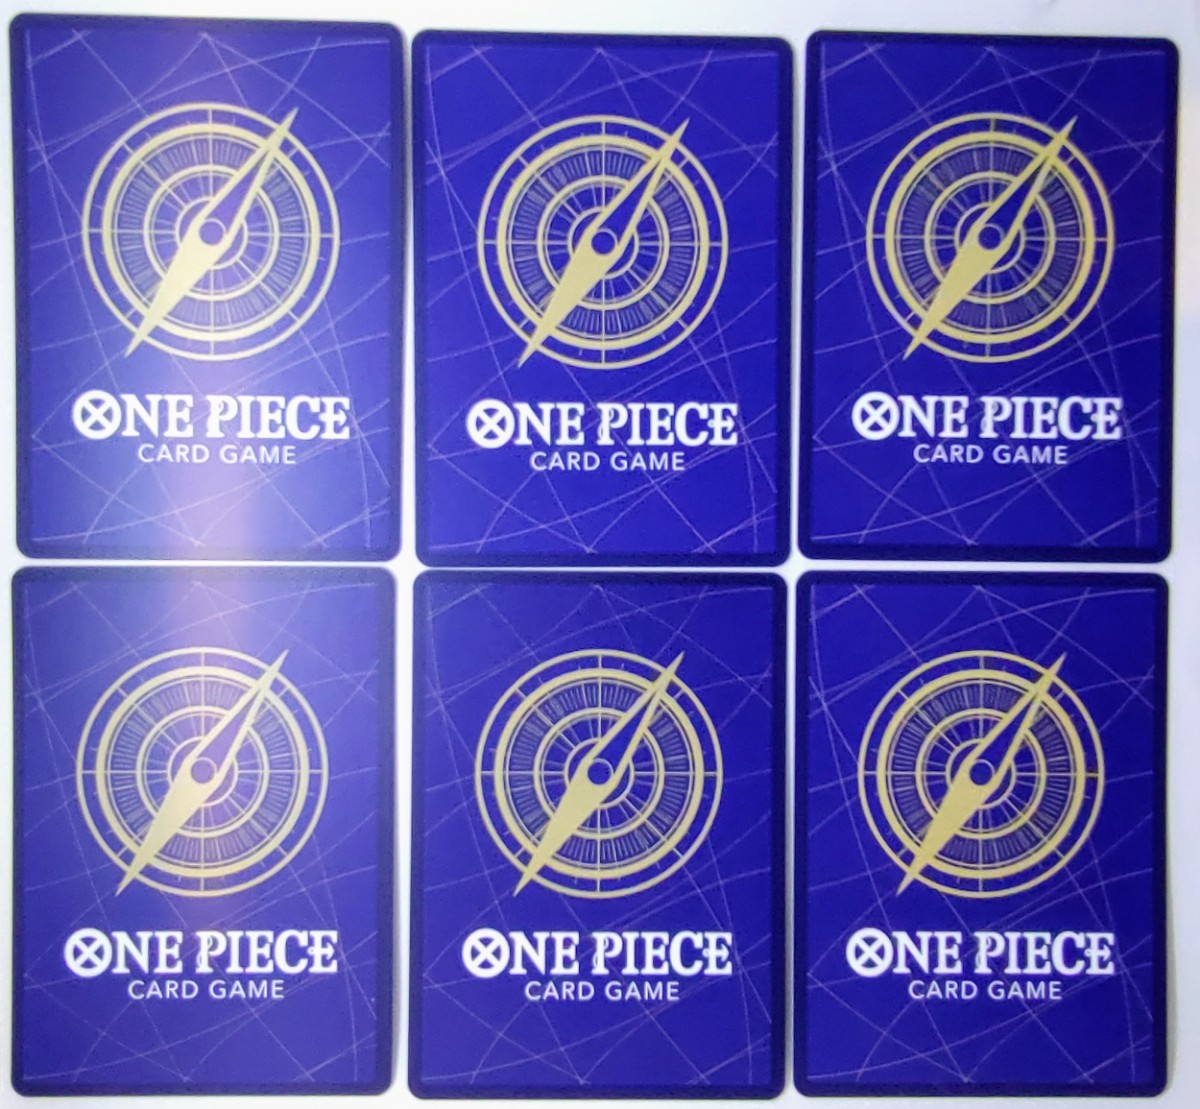 頂上決戦 BOX 購入 特典 全６種類 コンプリート ワンピース カード 